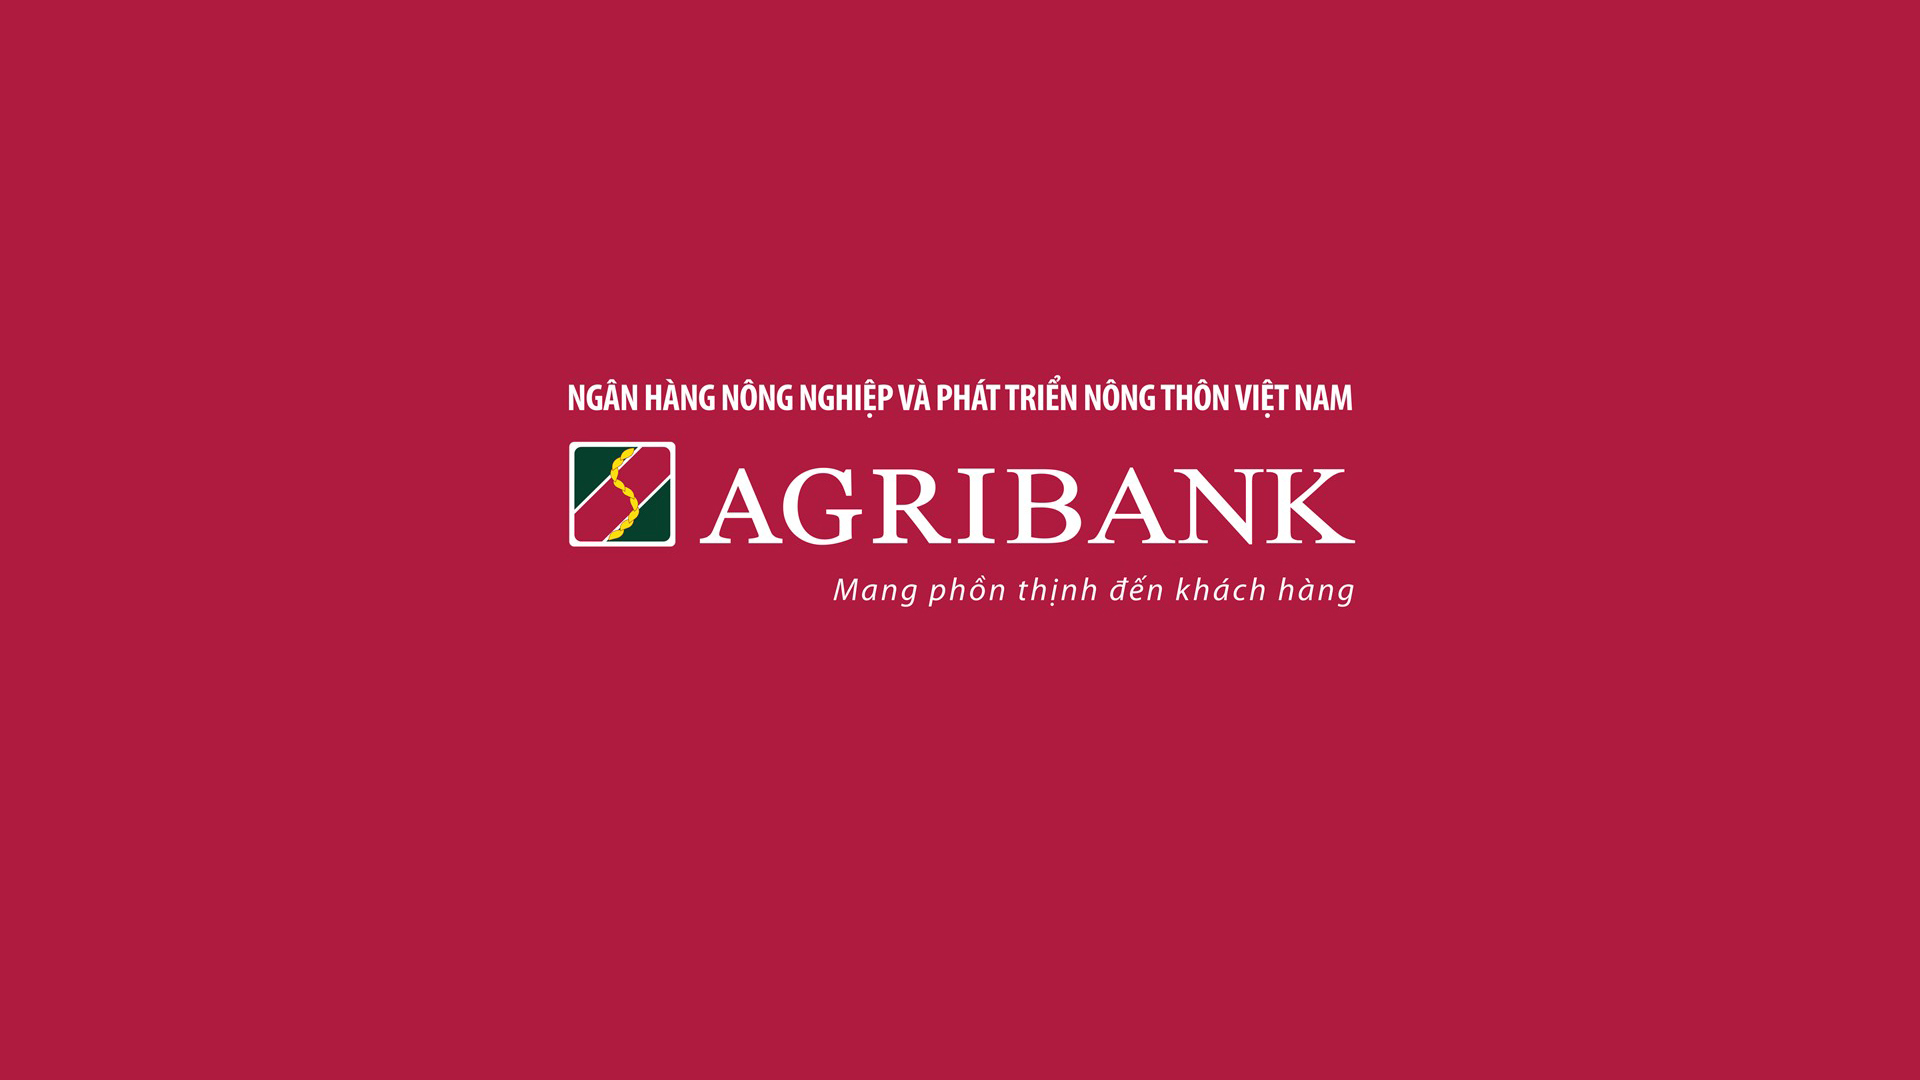 Agribank chi nhánh tỉnh Quảng Bình thông báo tuyển dụng đợt 2 năm 2022